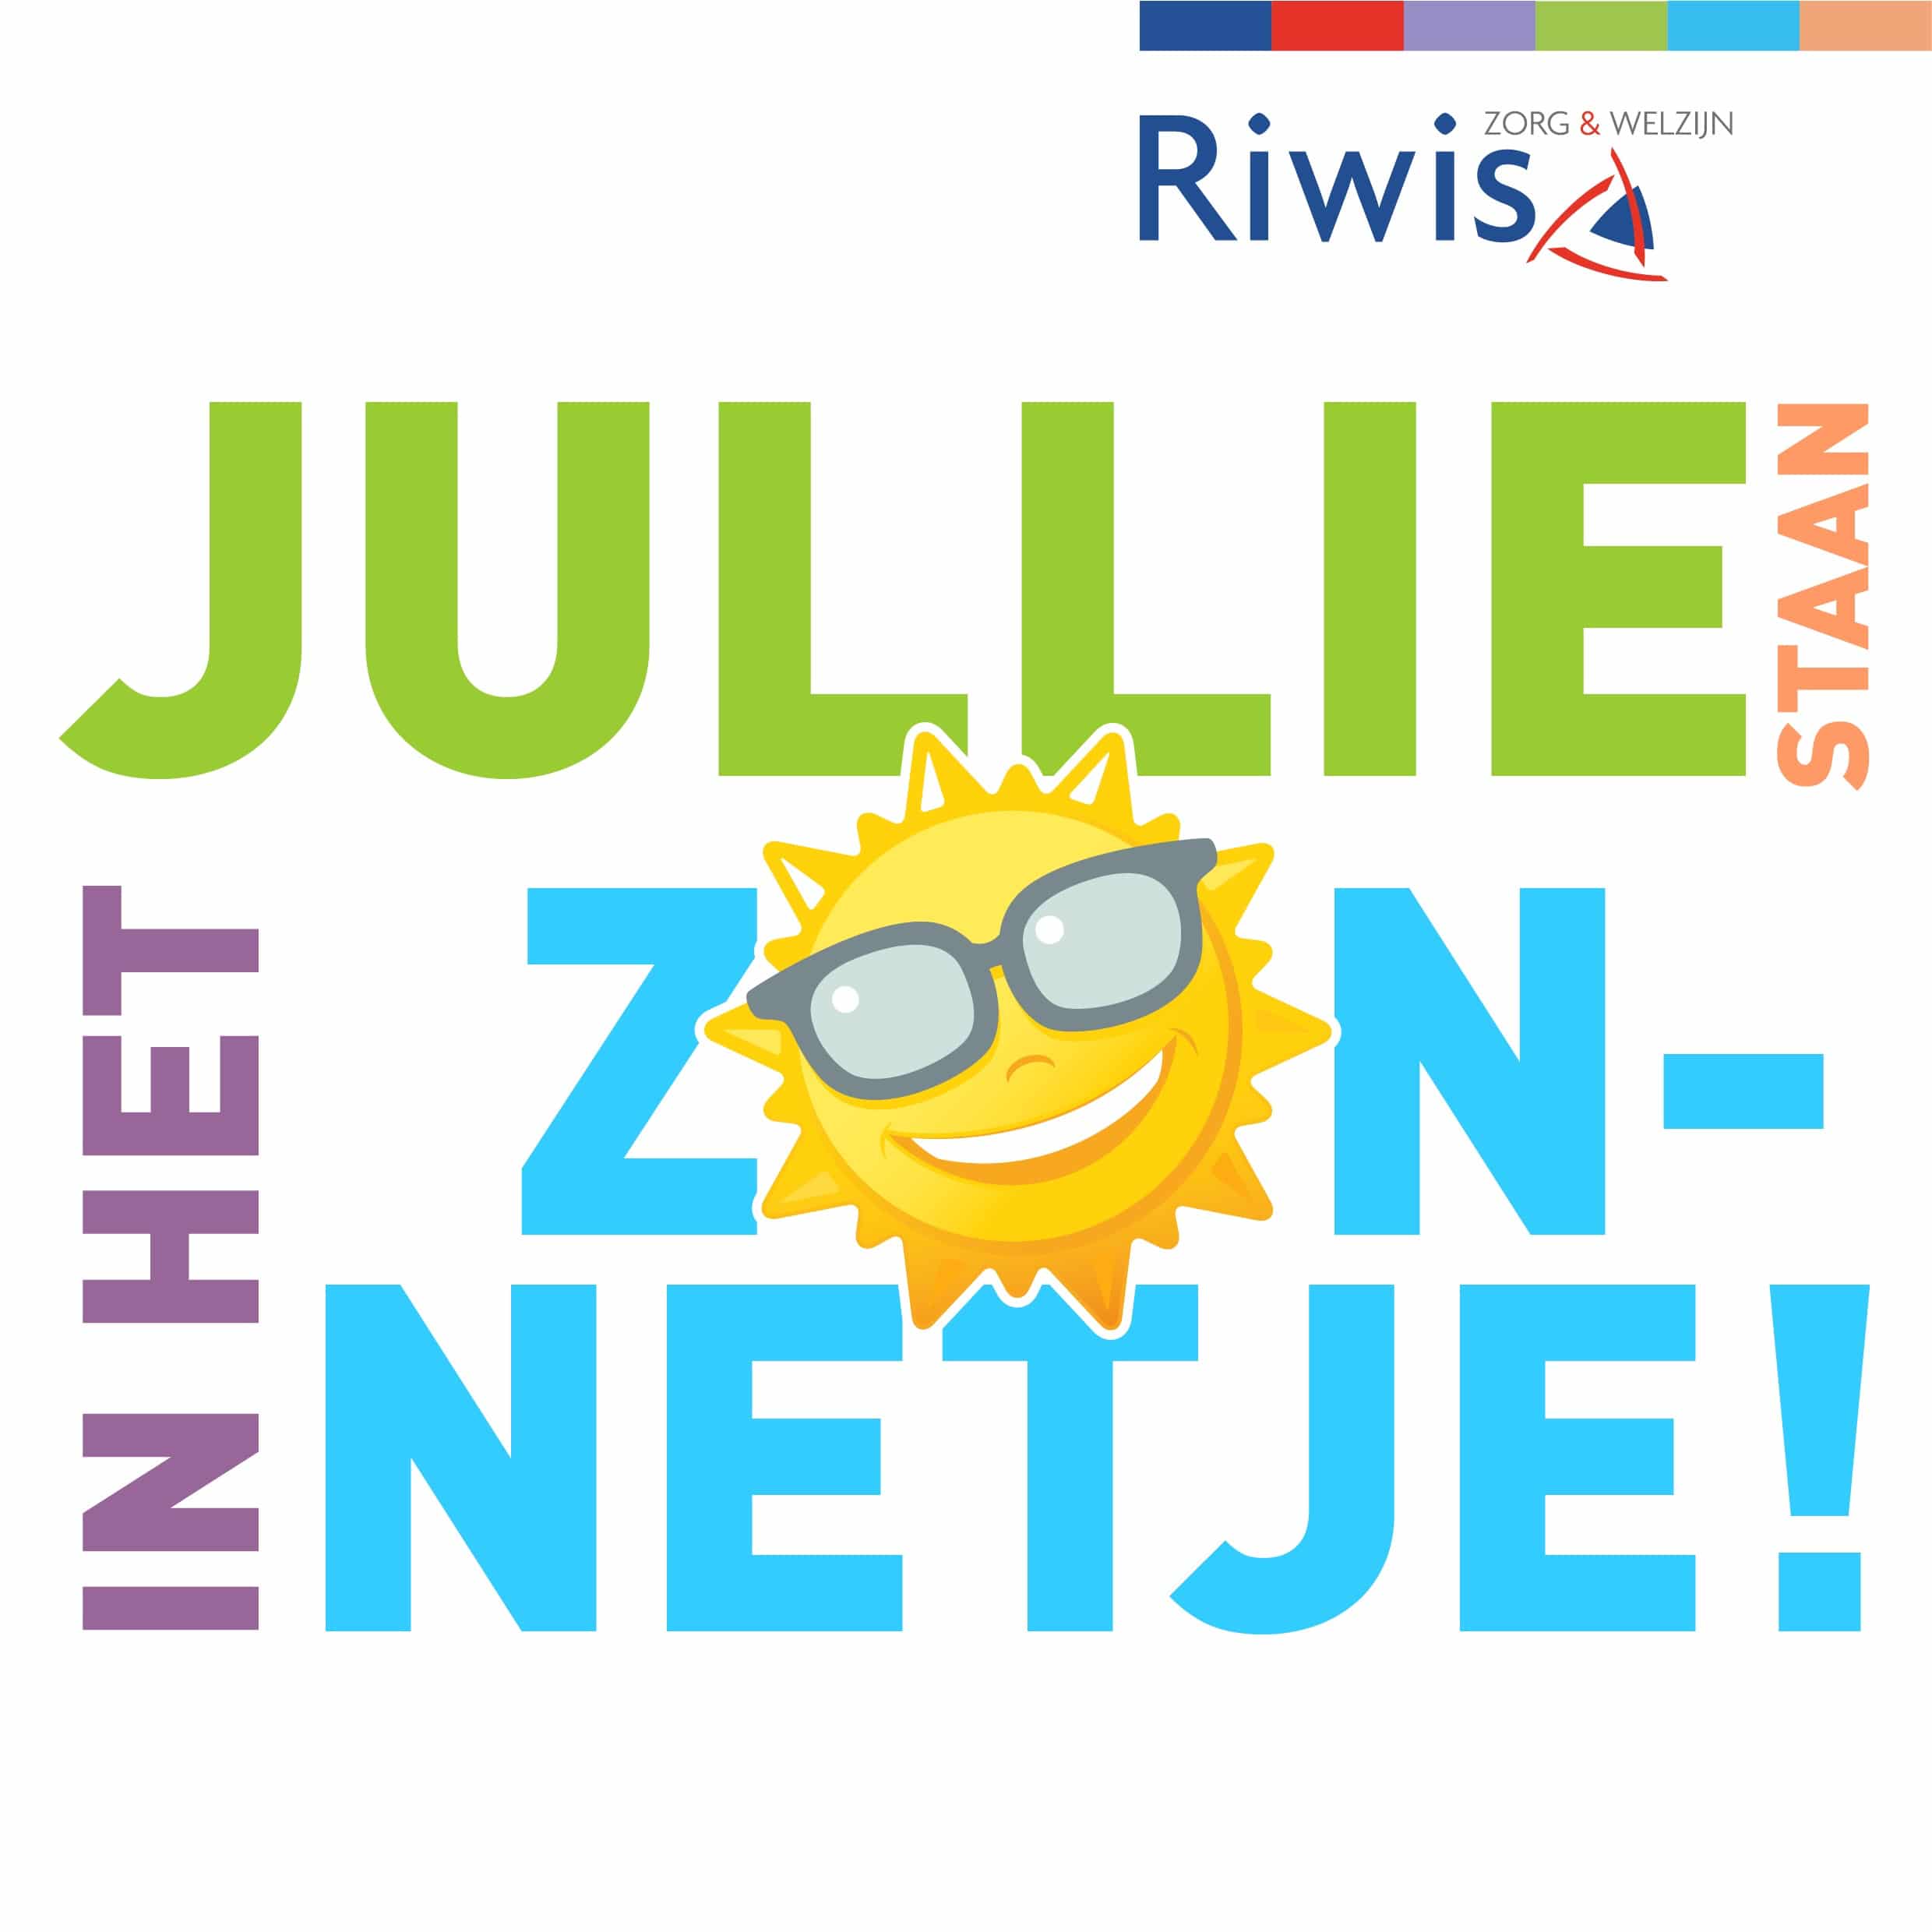 ruw Plicht koppeling VVT-iconen Riwis in het zonnetje - Riwis Zorg & Welzijn